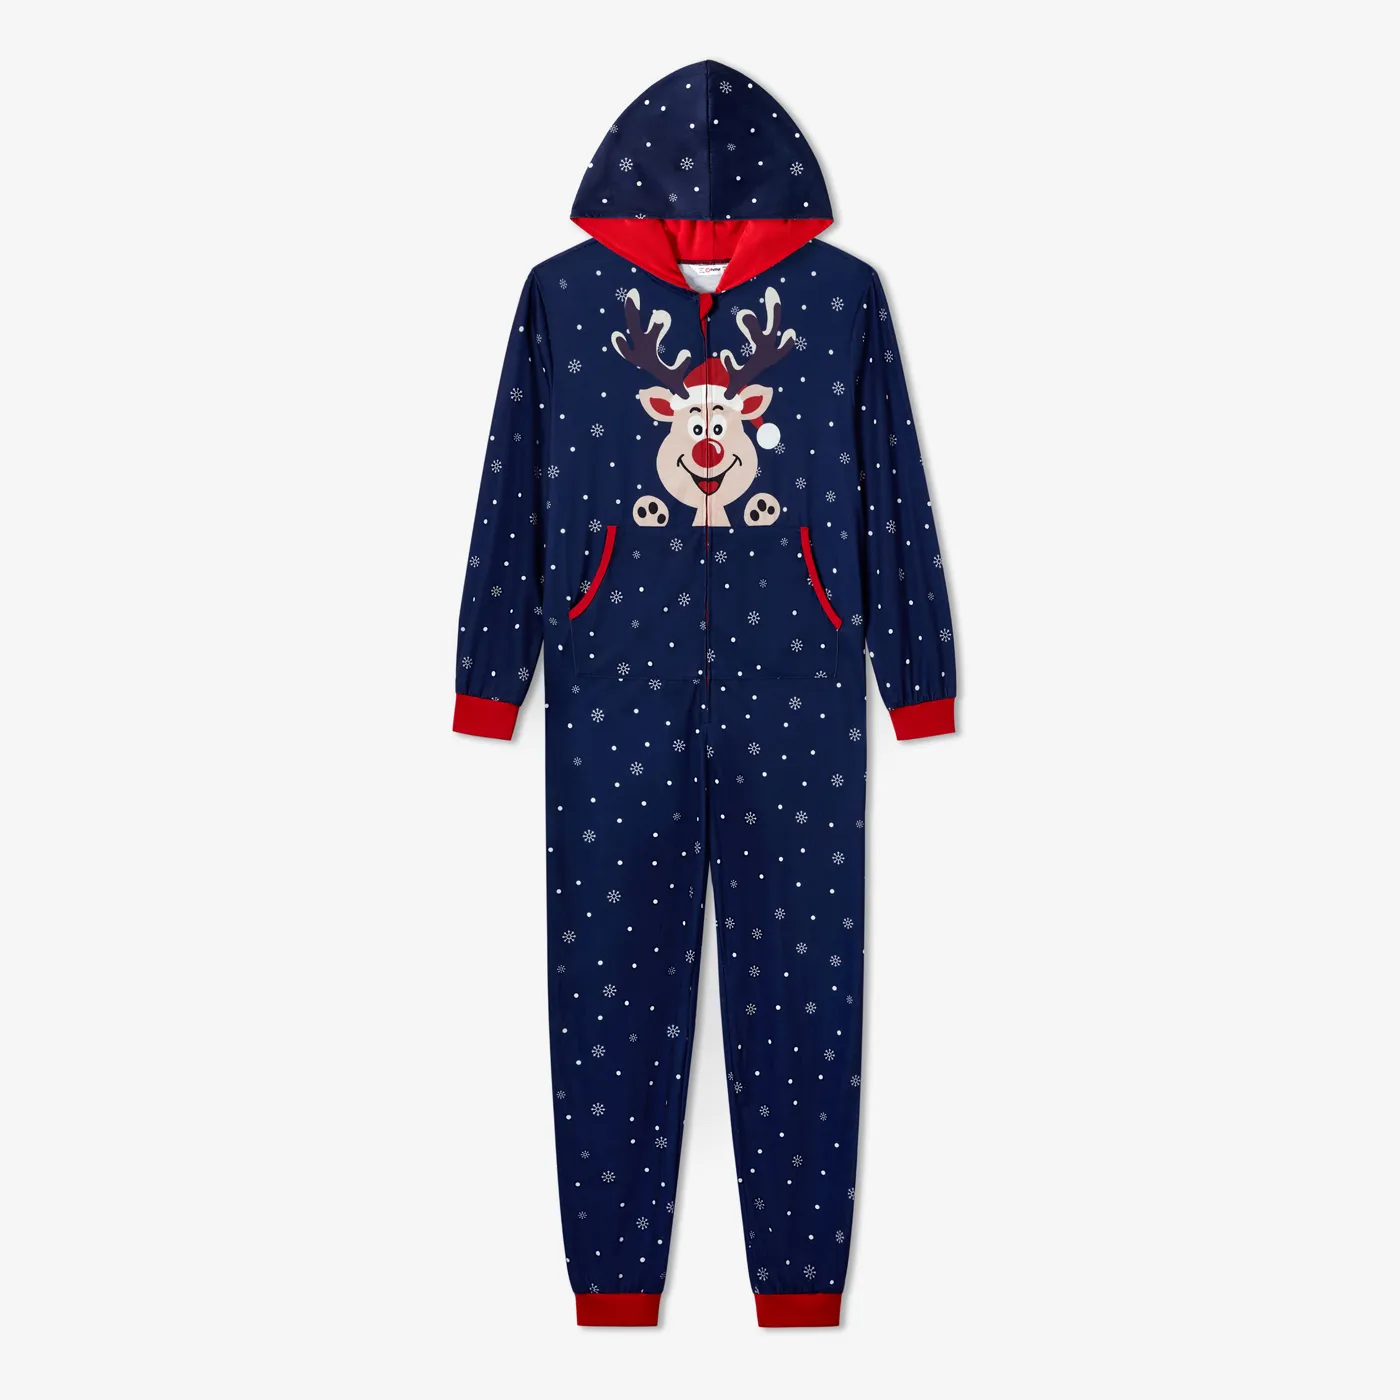 Christmas Family Matching Reindeer&Snowflake Print Long-sleeve Zipper Hooded Onesies Pajamas Sets (Flame Resistant)